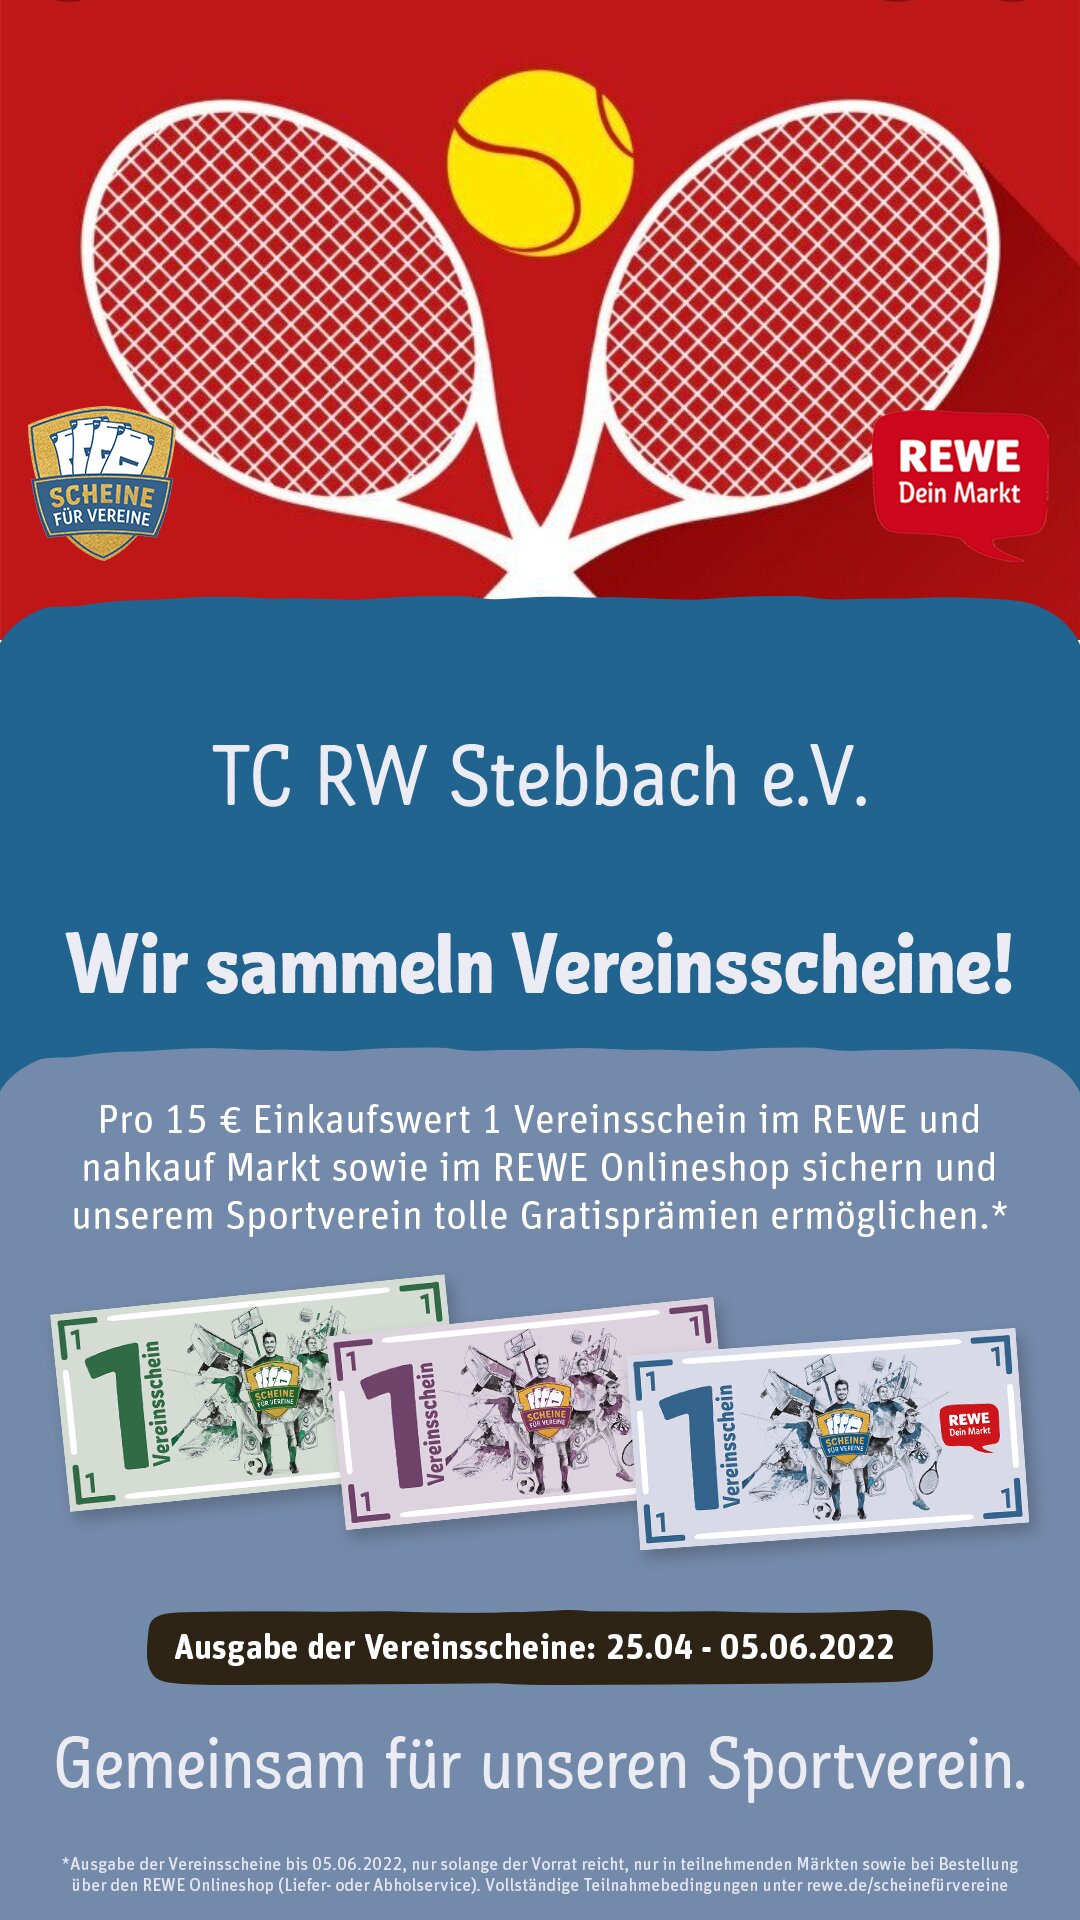 REWE_Scheine-fuer-Vereine_Poster-Story-(1).jpg